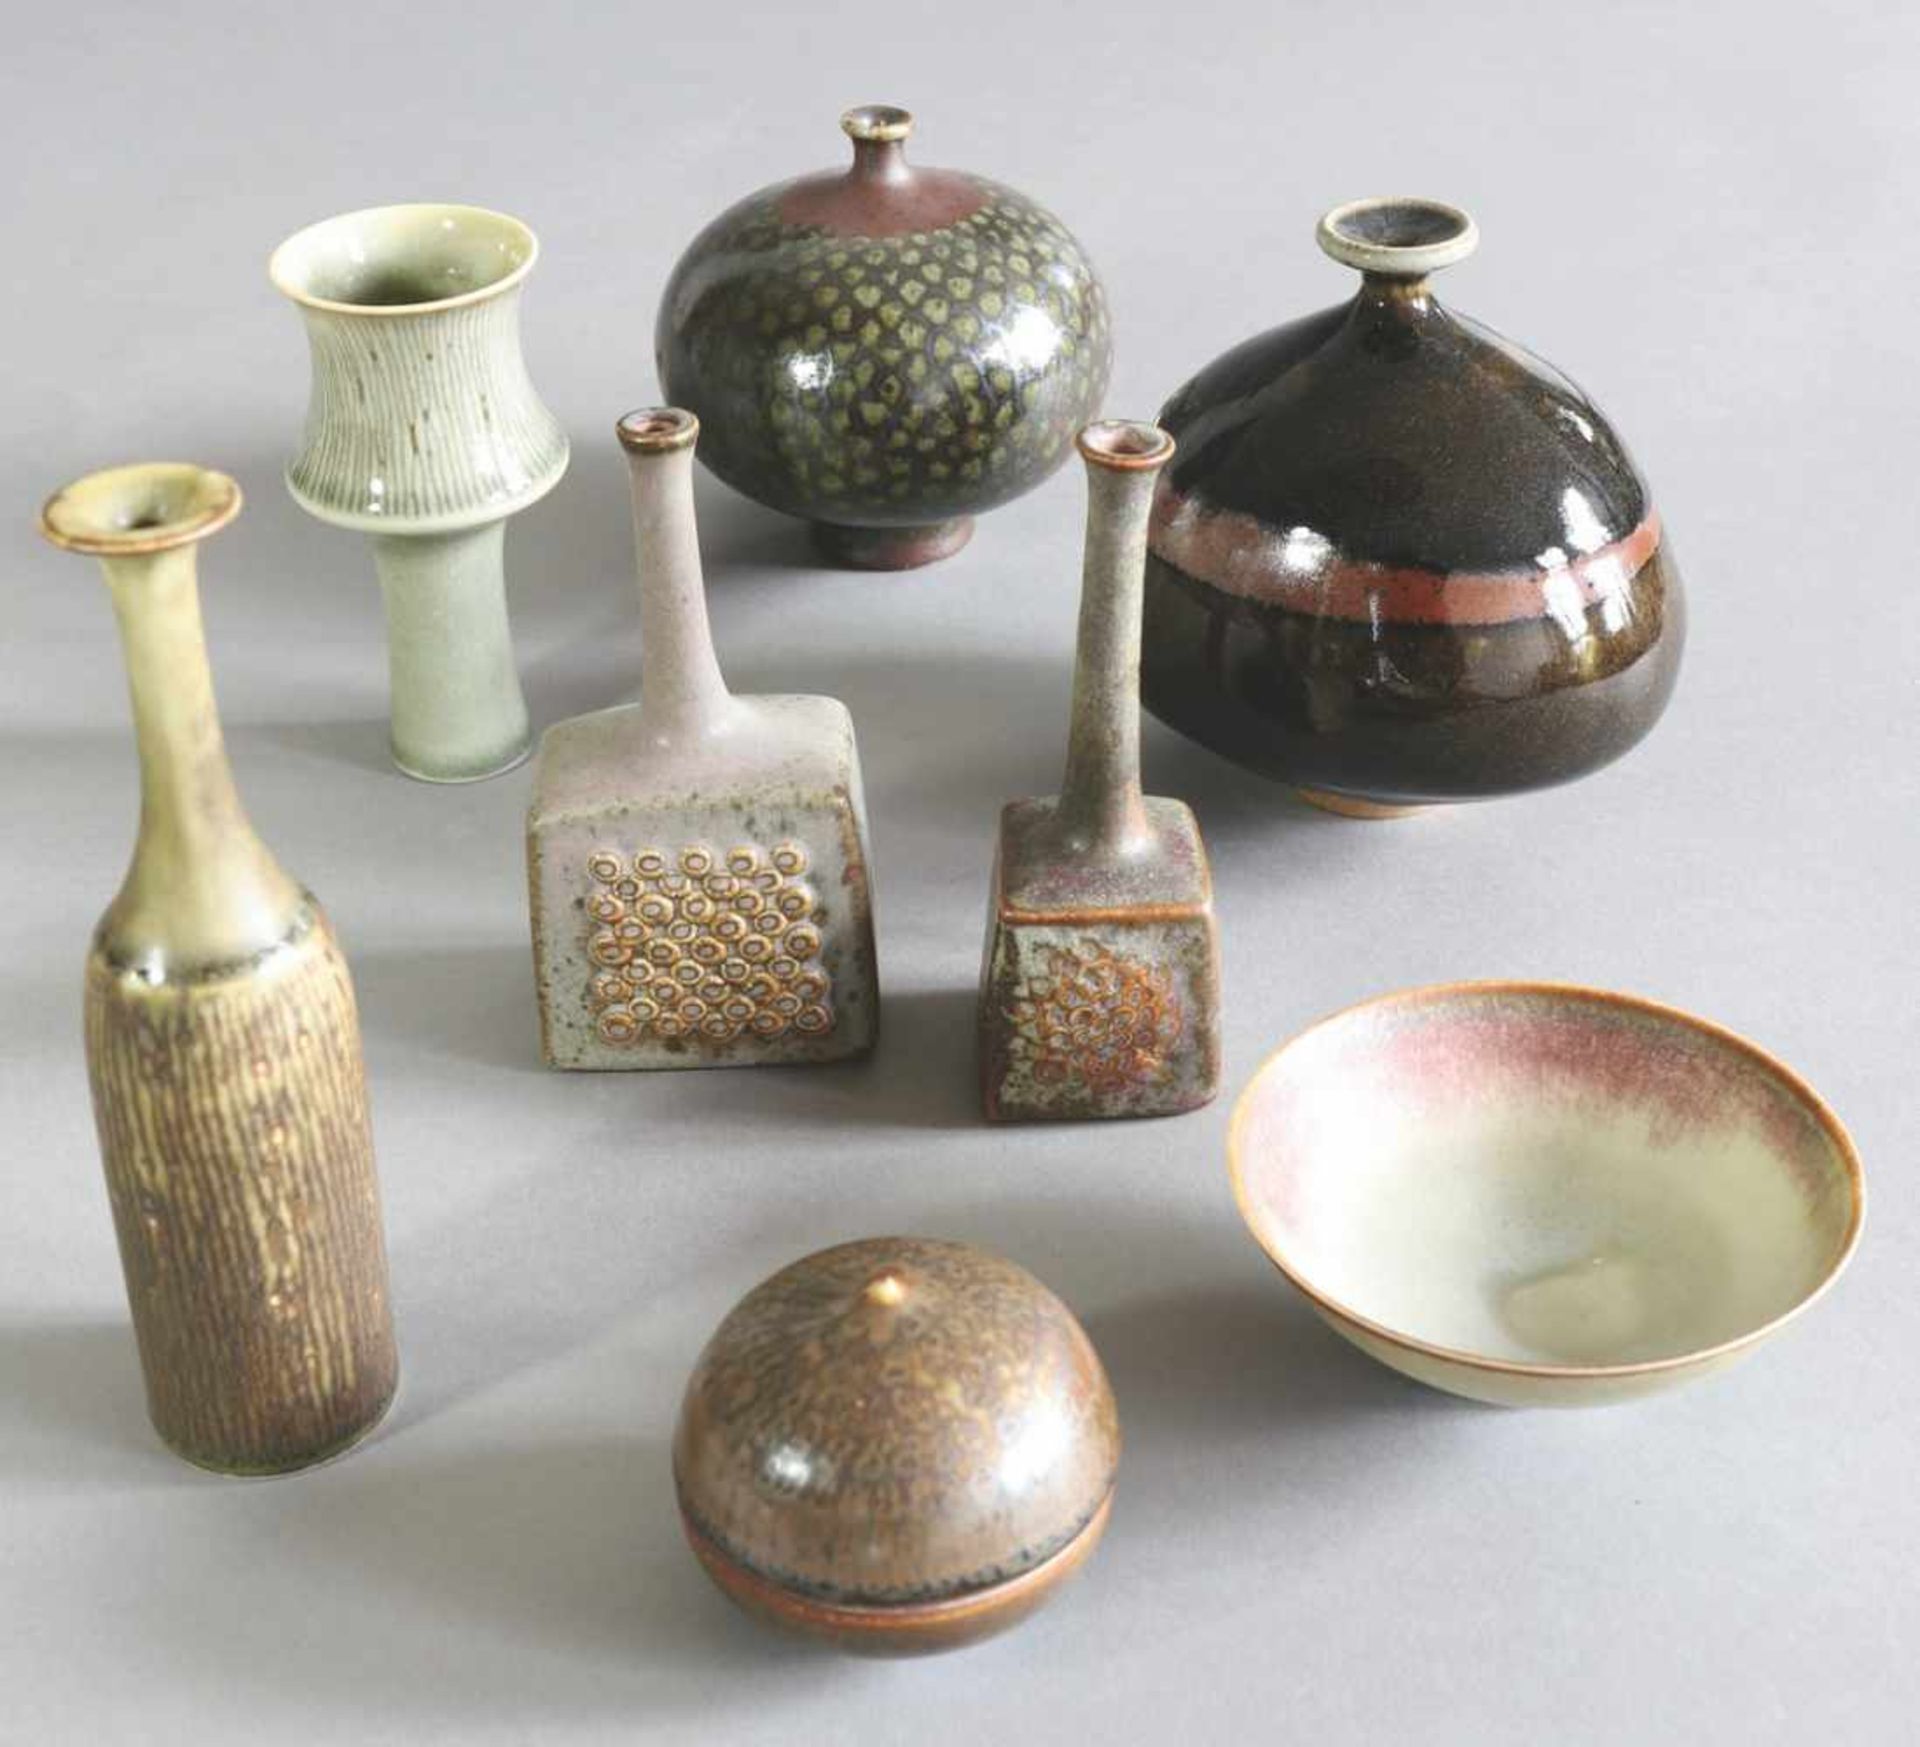 Ursula und Karl Scheidabout 1968-708 kleine Keramiken. Um 1968-70. Bestehend aus Dose, Schale und